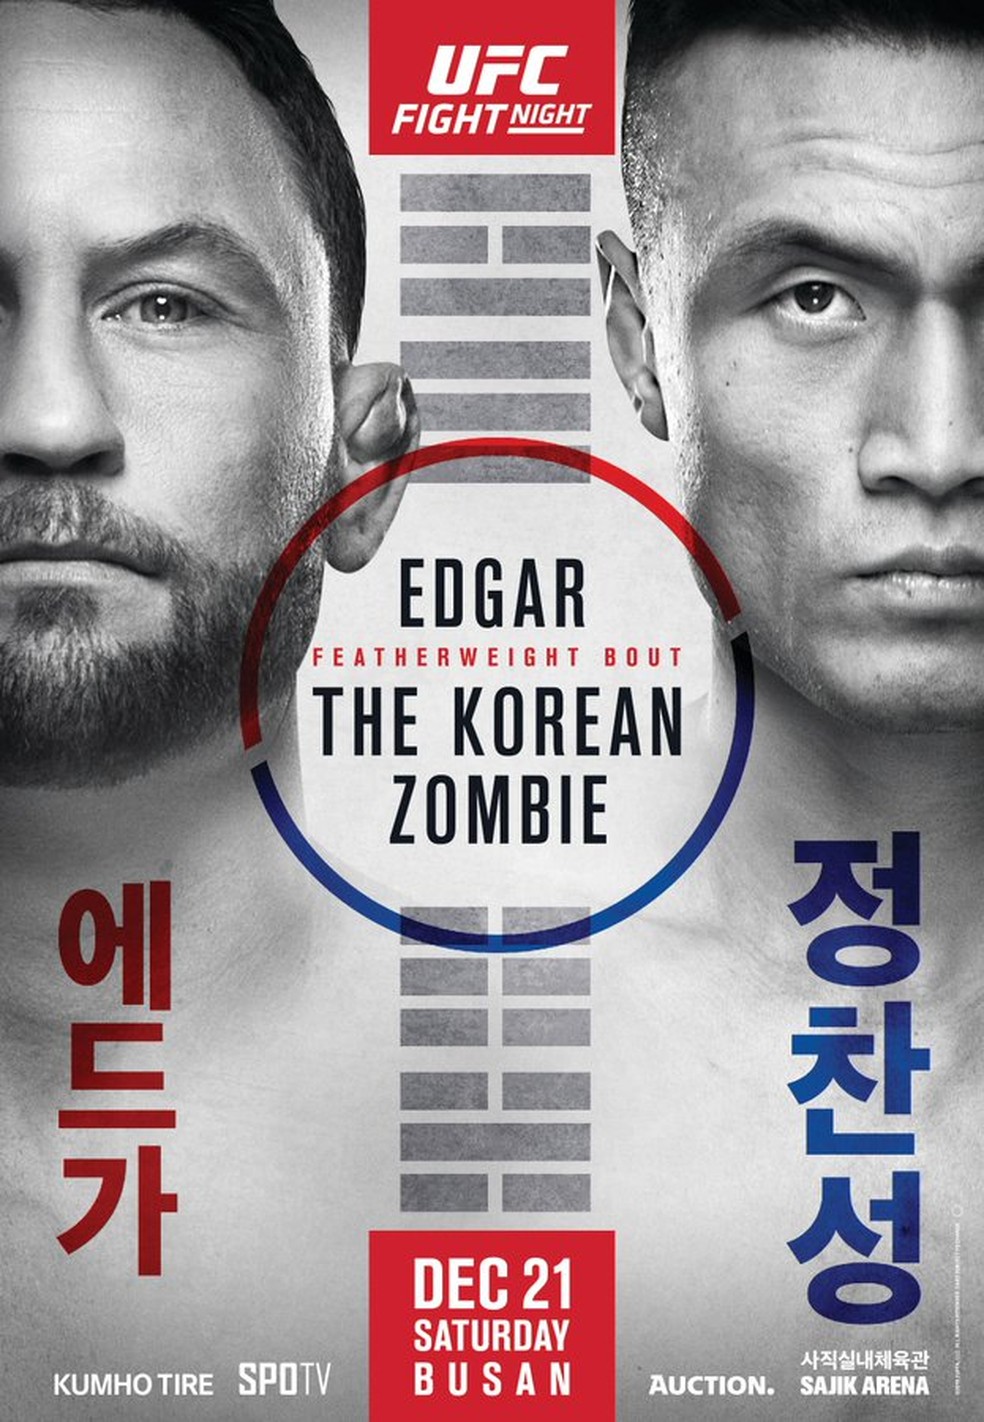 O que significa Fighting? - Pergunta sobre a Coreano